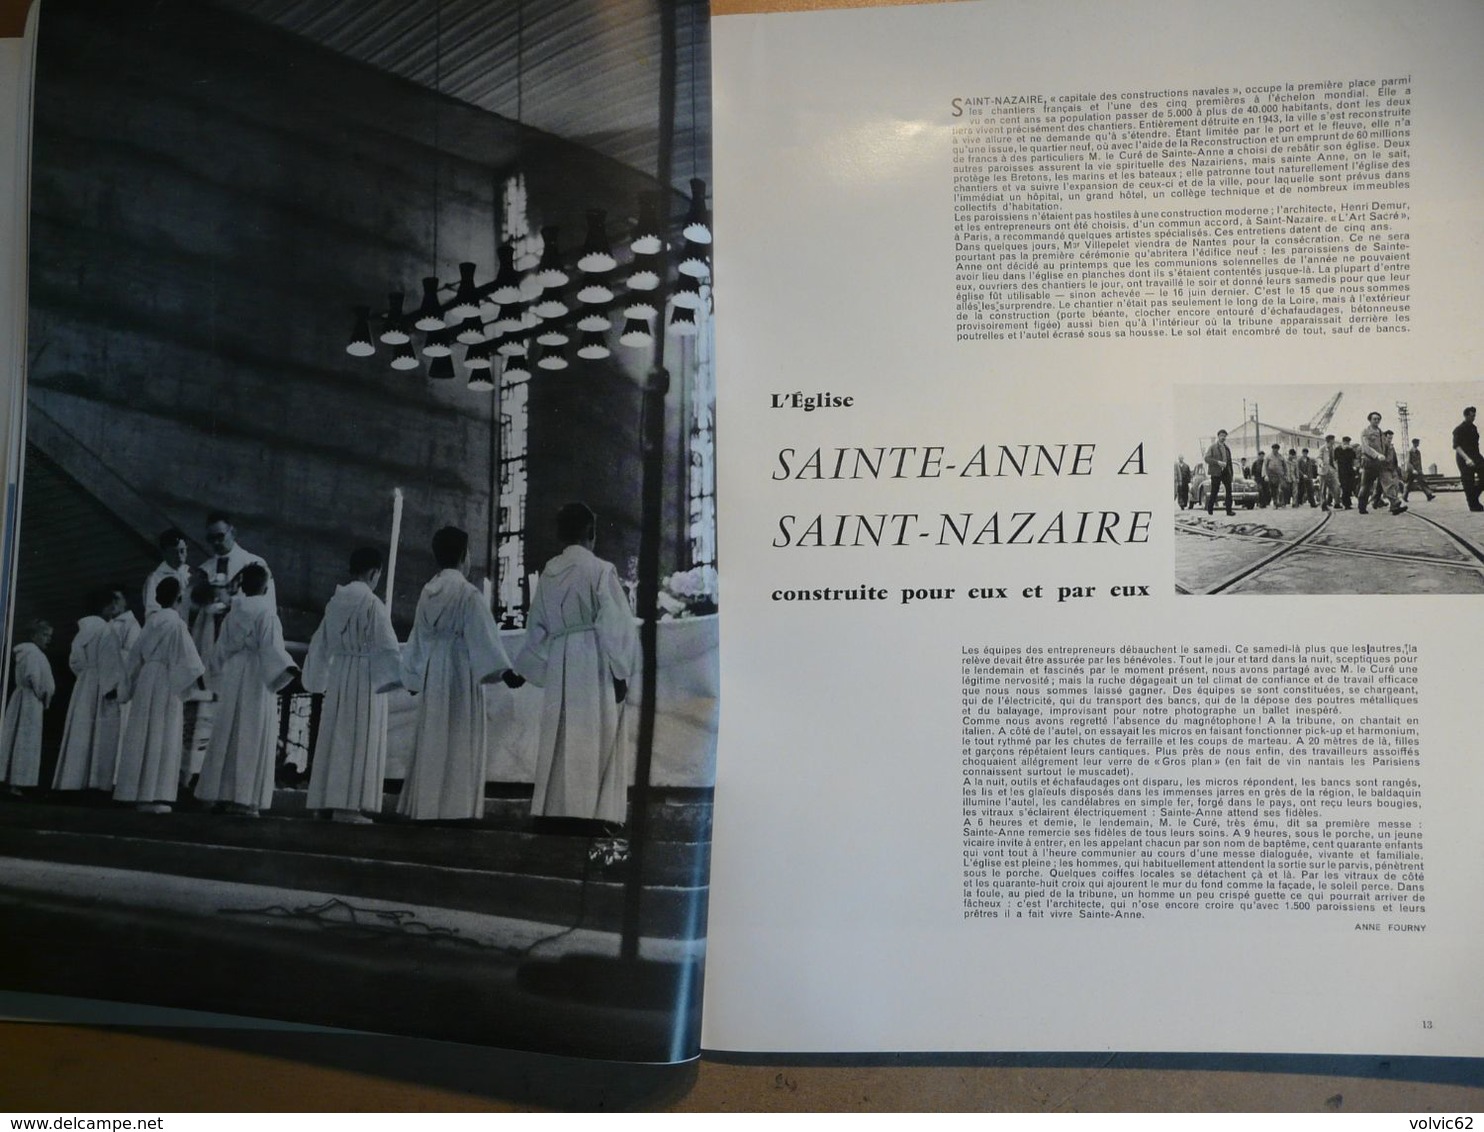 Plaisir de france 1957 naples pompei sorrente amalfi ravello capri Sainte Anne à Saint Nazaire chateaux du Léman